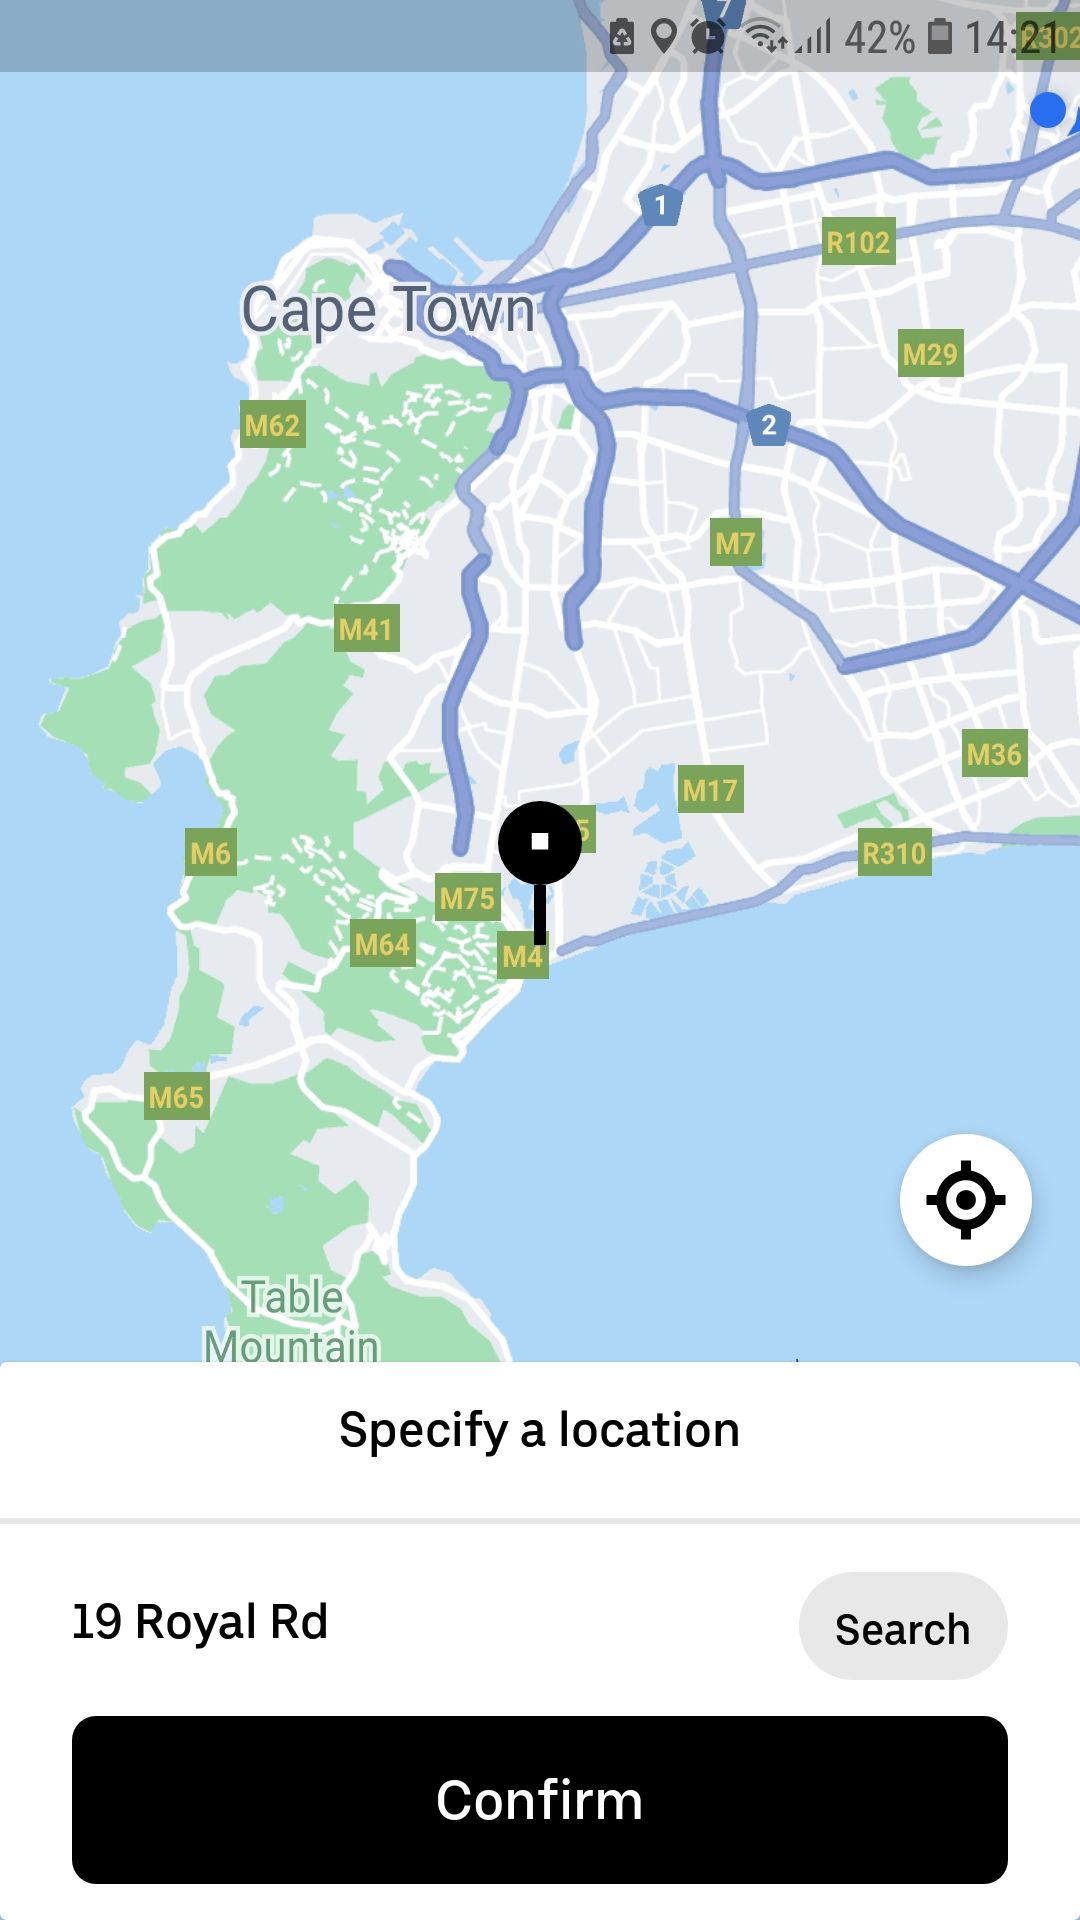 L'application mobile Uber confirme le lieu de livraison